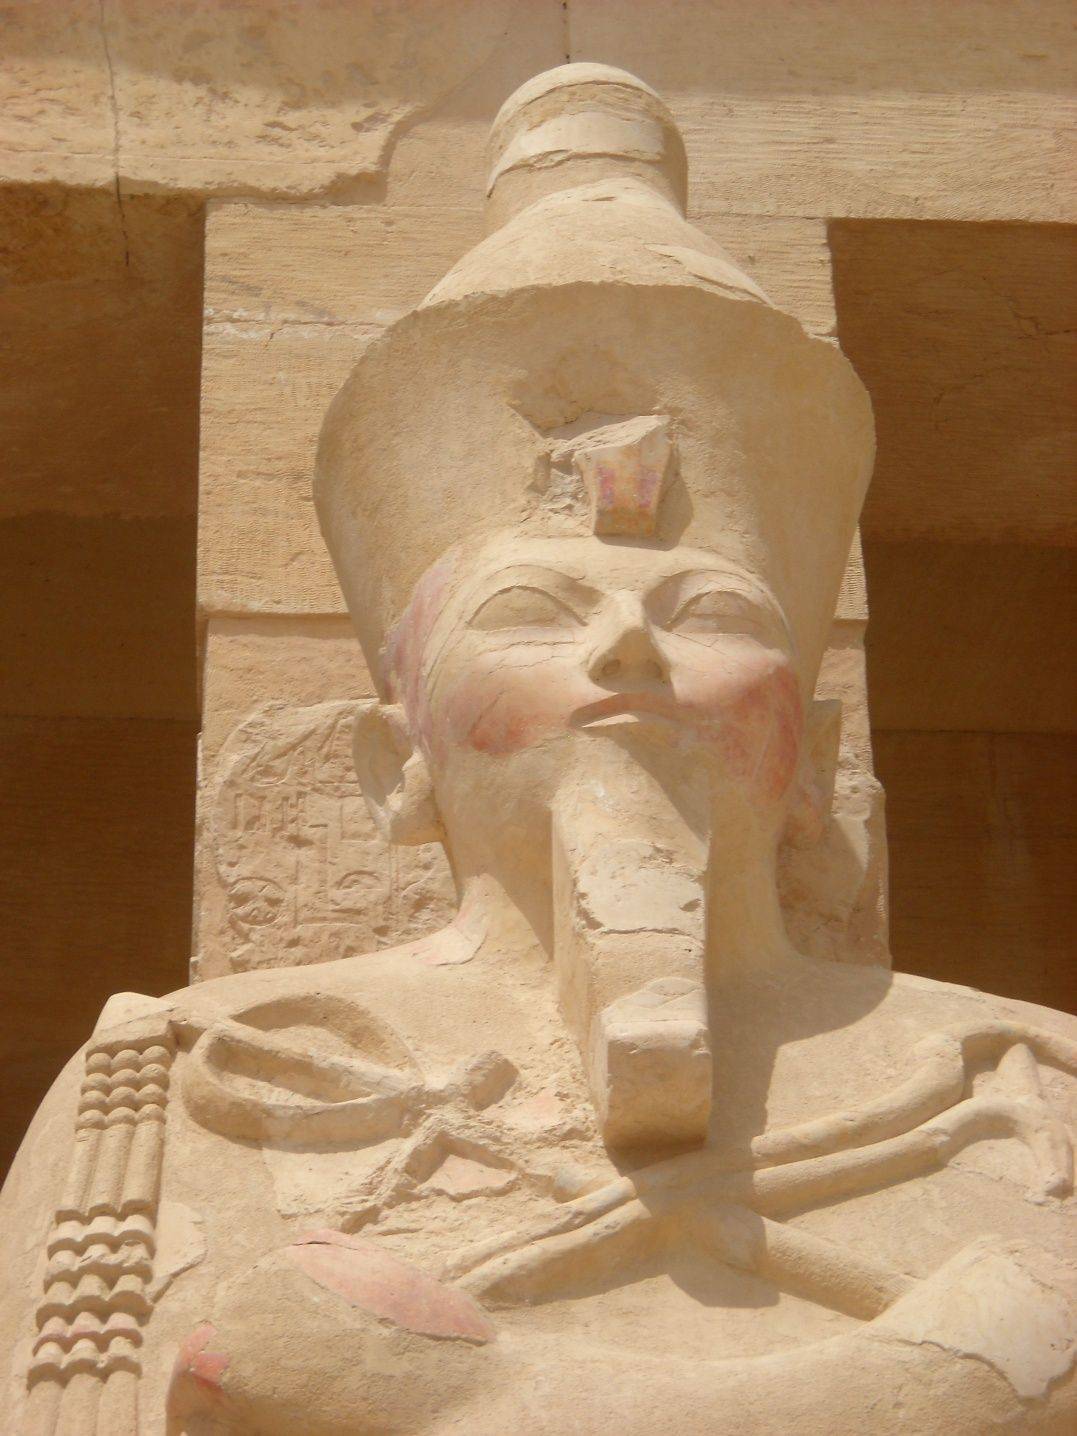 Inizio del tour nei pressi di Luxor